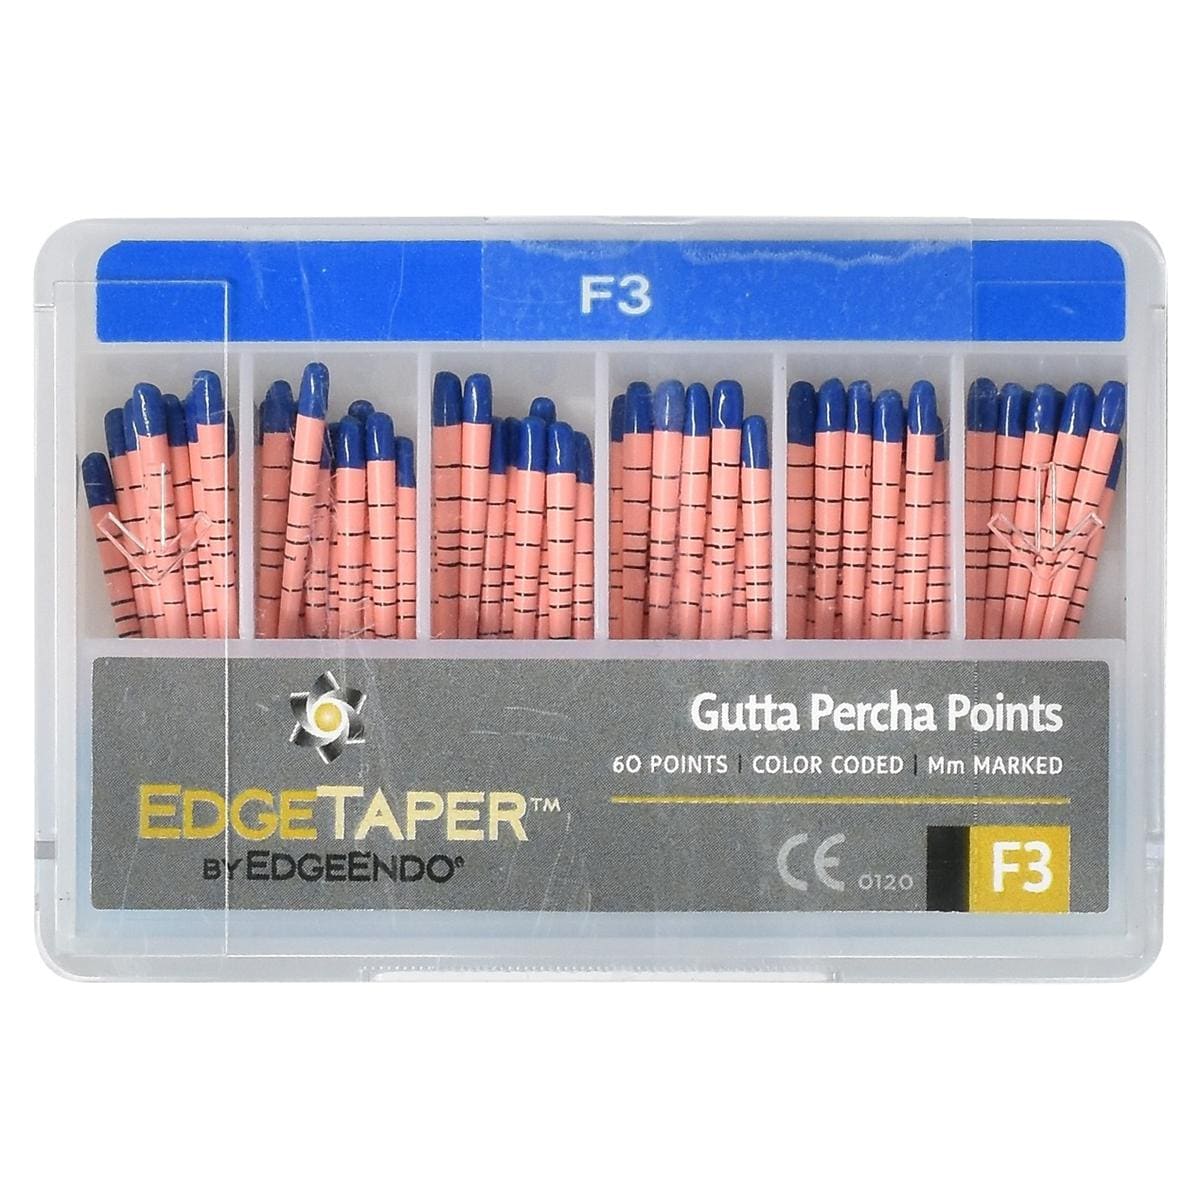 EdgeTaper Gutta Percha Point - F3